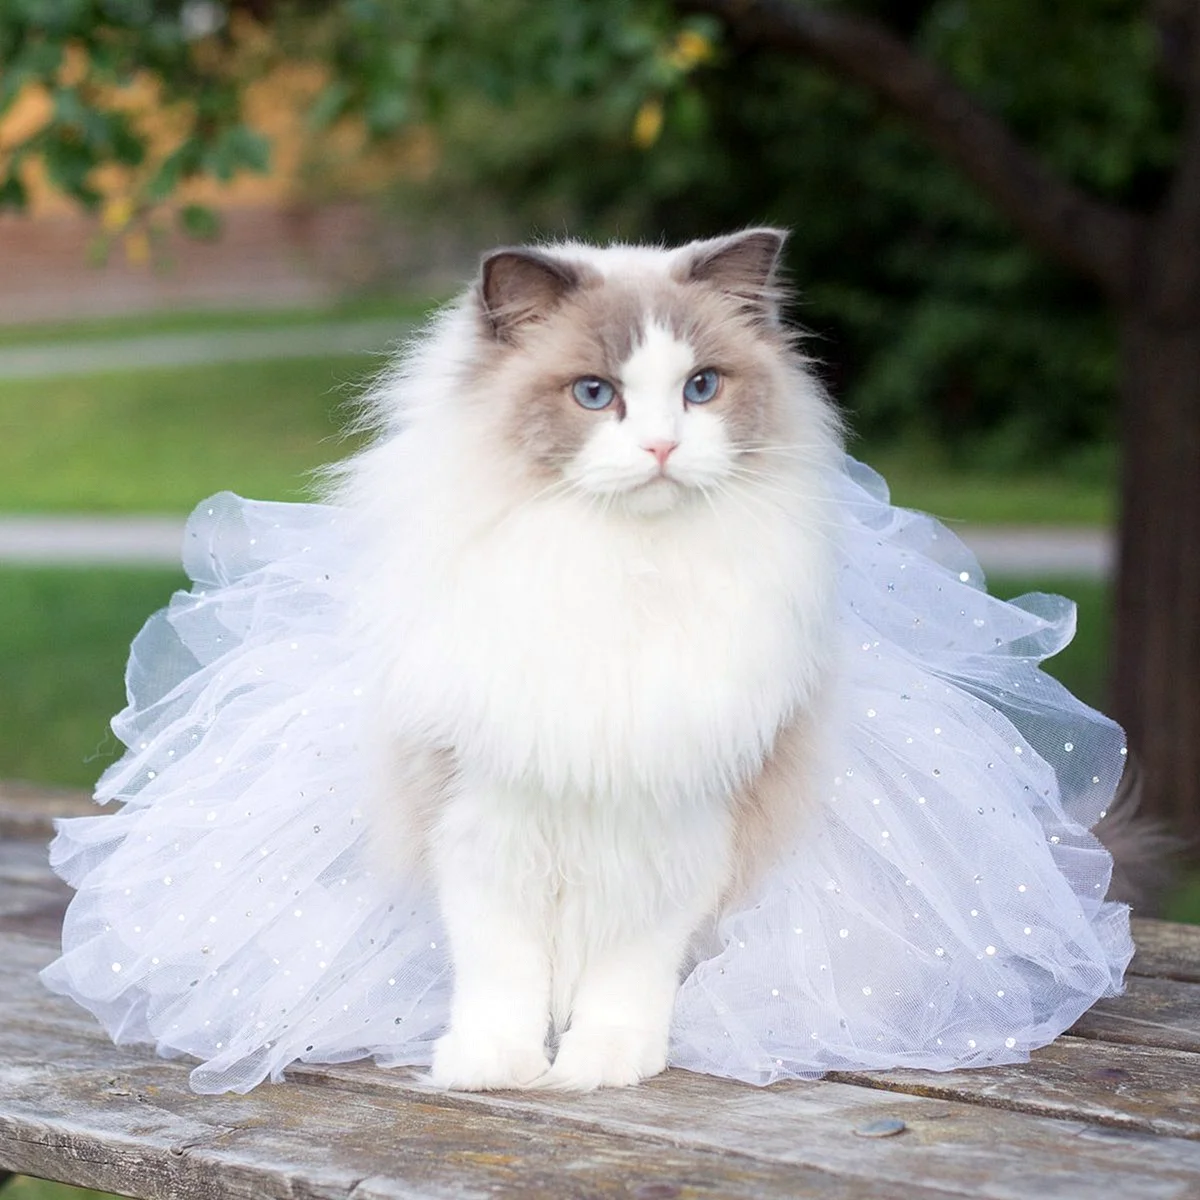 Рэгдолл кошка принцесса Аврора